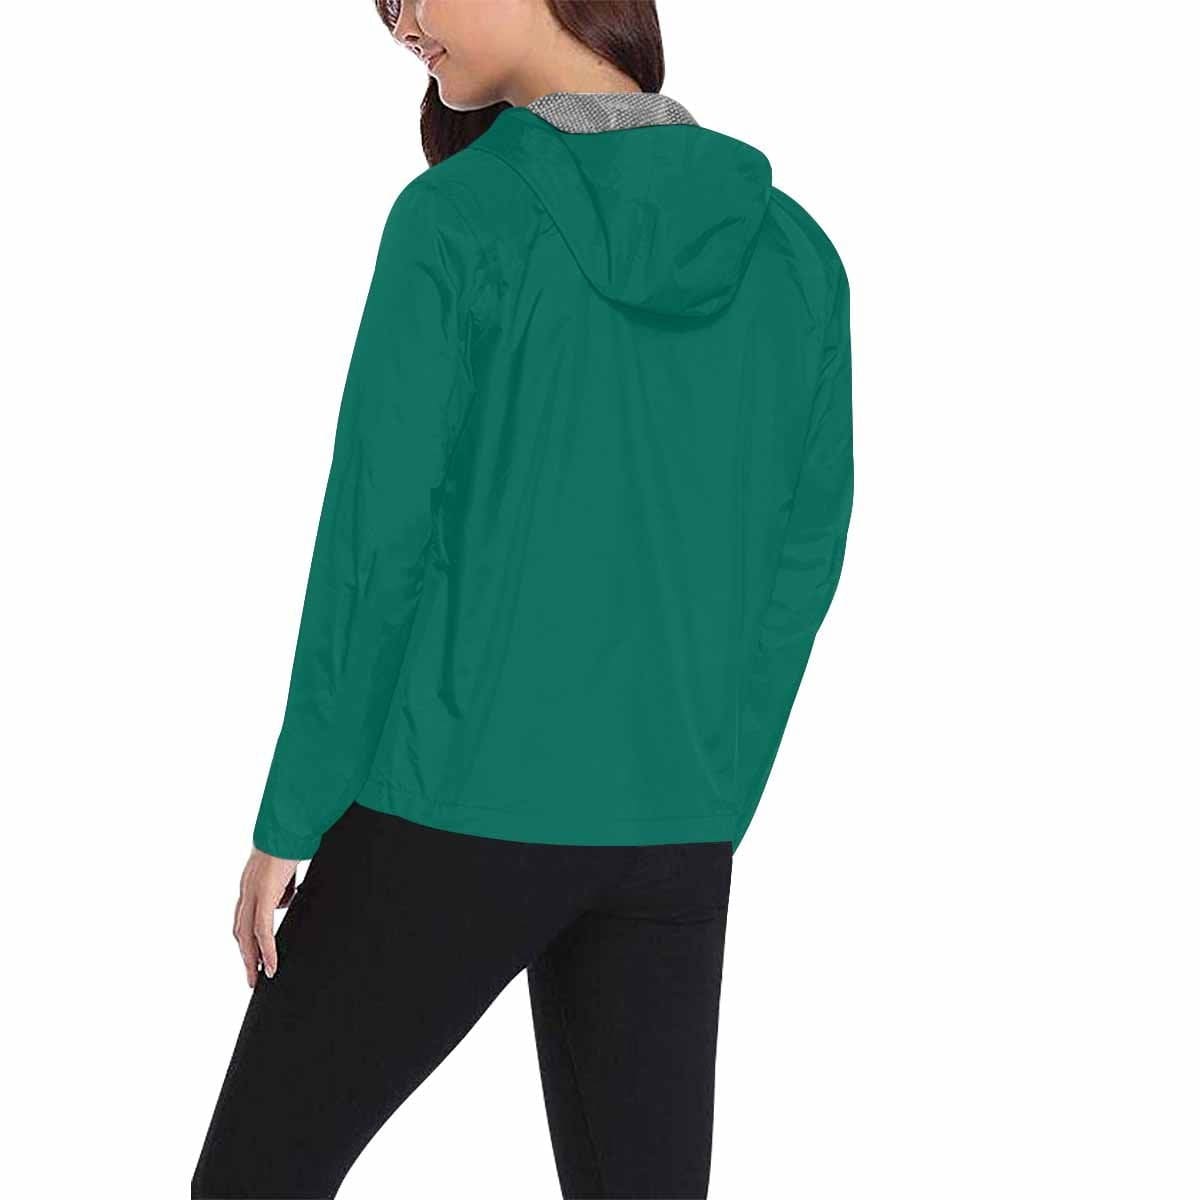 Teal Green Hooded Windbreaker Jacket - Men / Women - Mens | Jackets